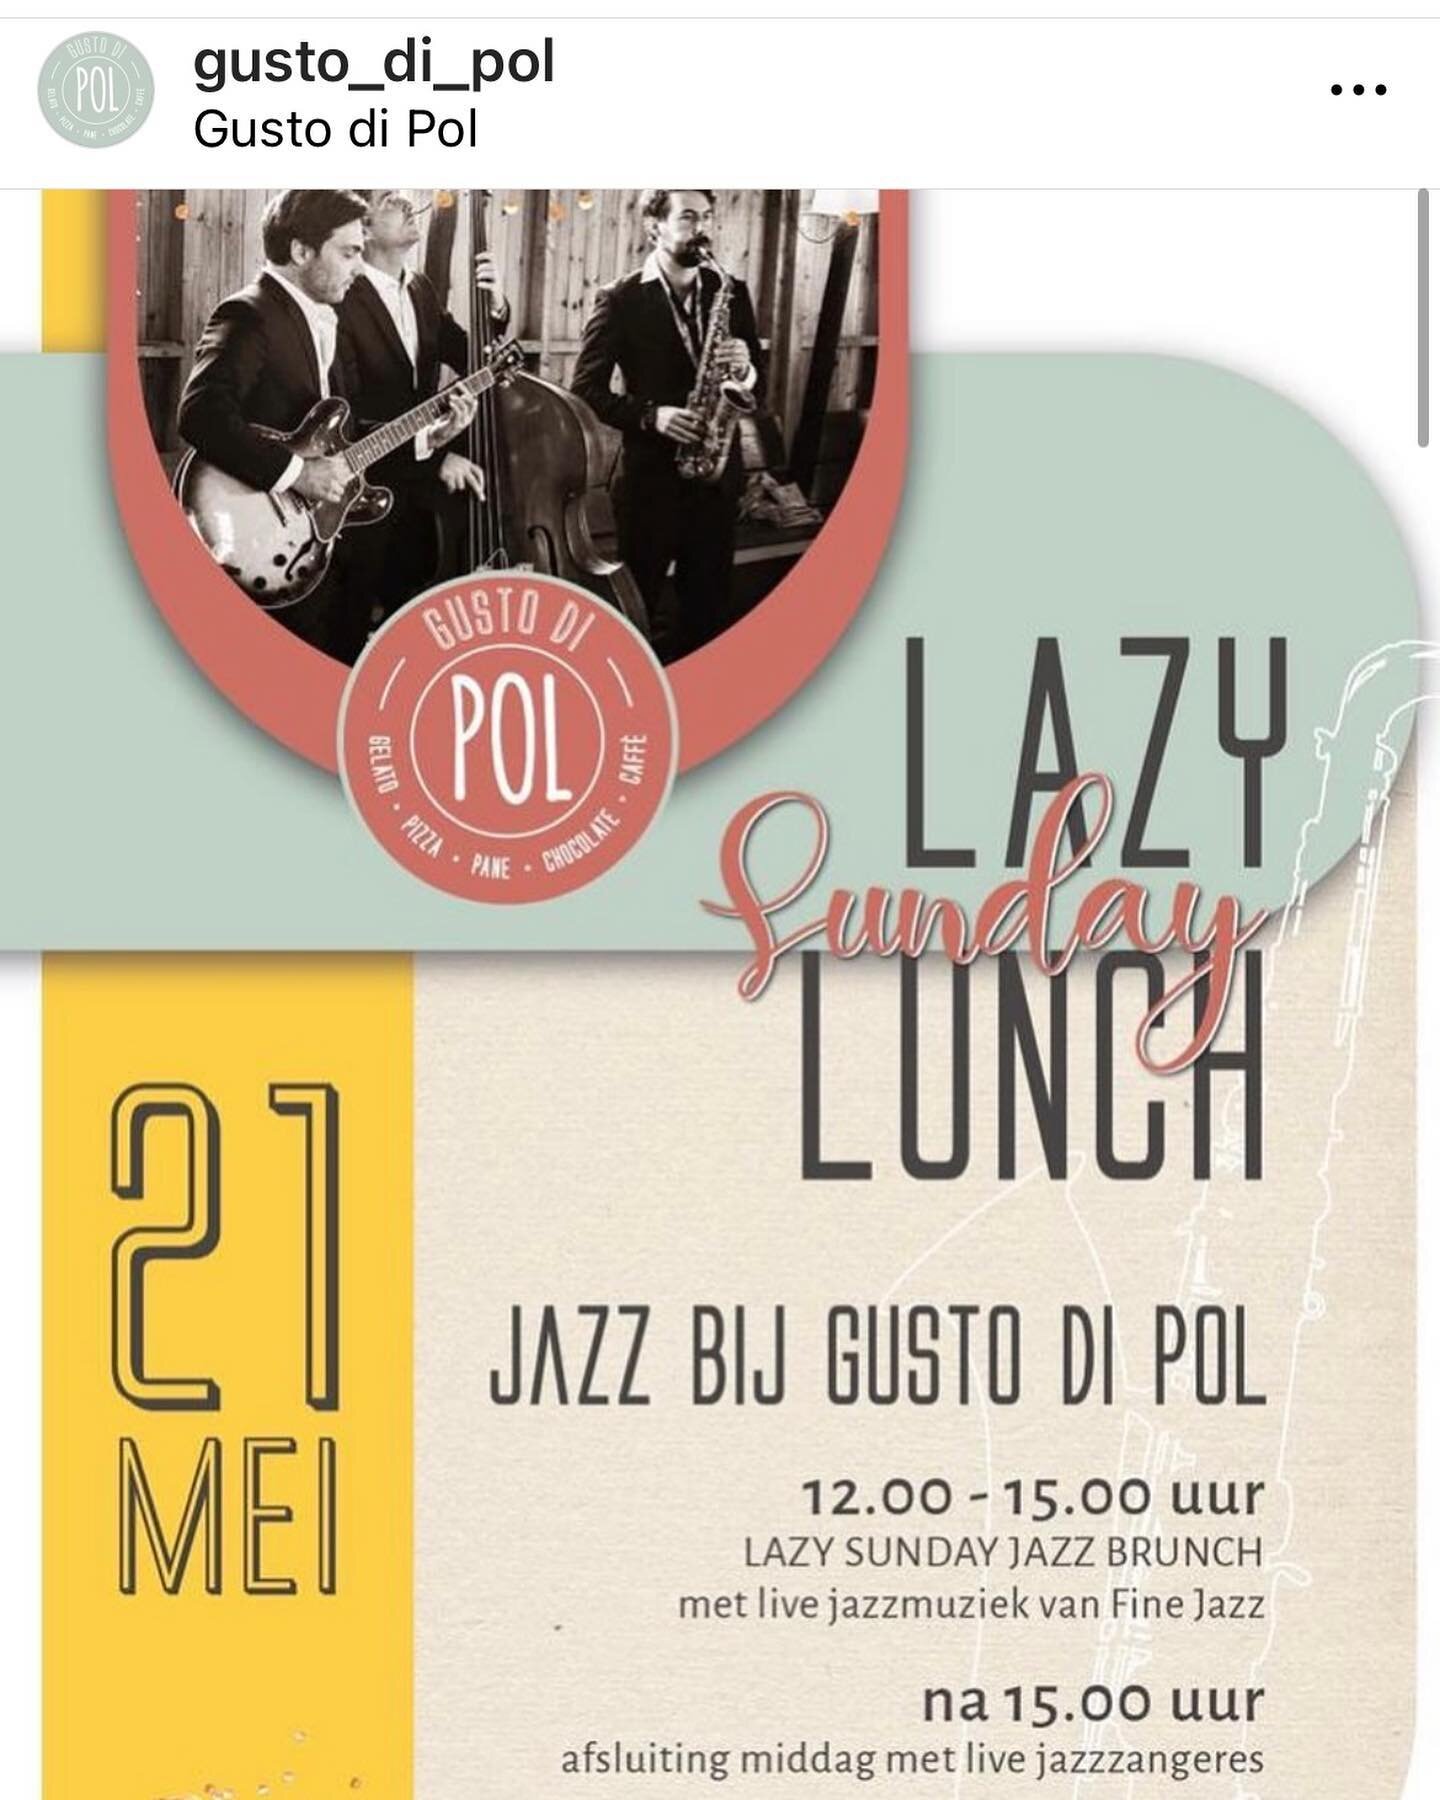 A.s zondag spelen wij met ons Fine Jazz Trio in Breda bij restaurant @gusto_di_pol 🎶🎶 12-15 uur.  Zin in!